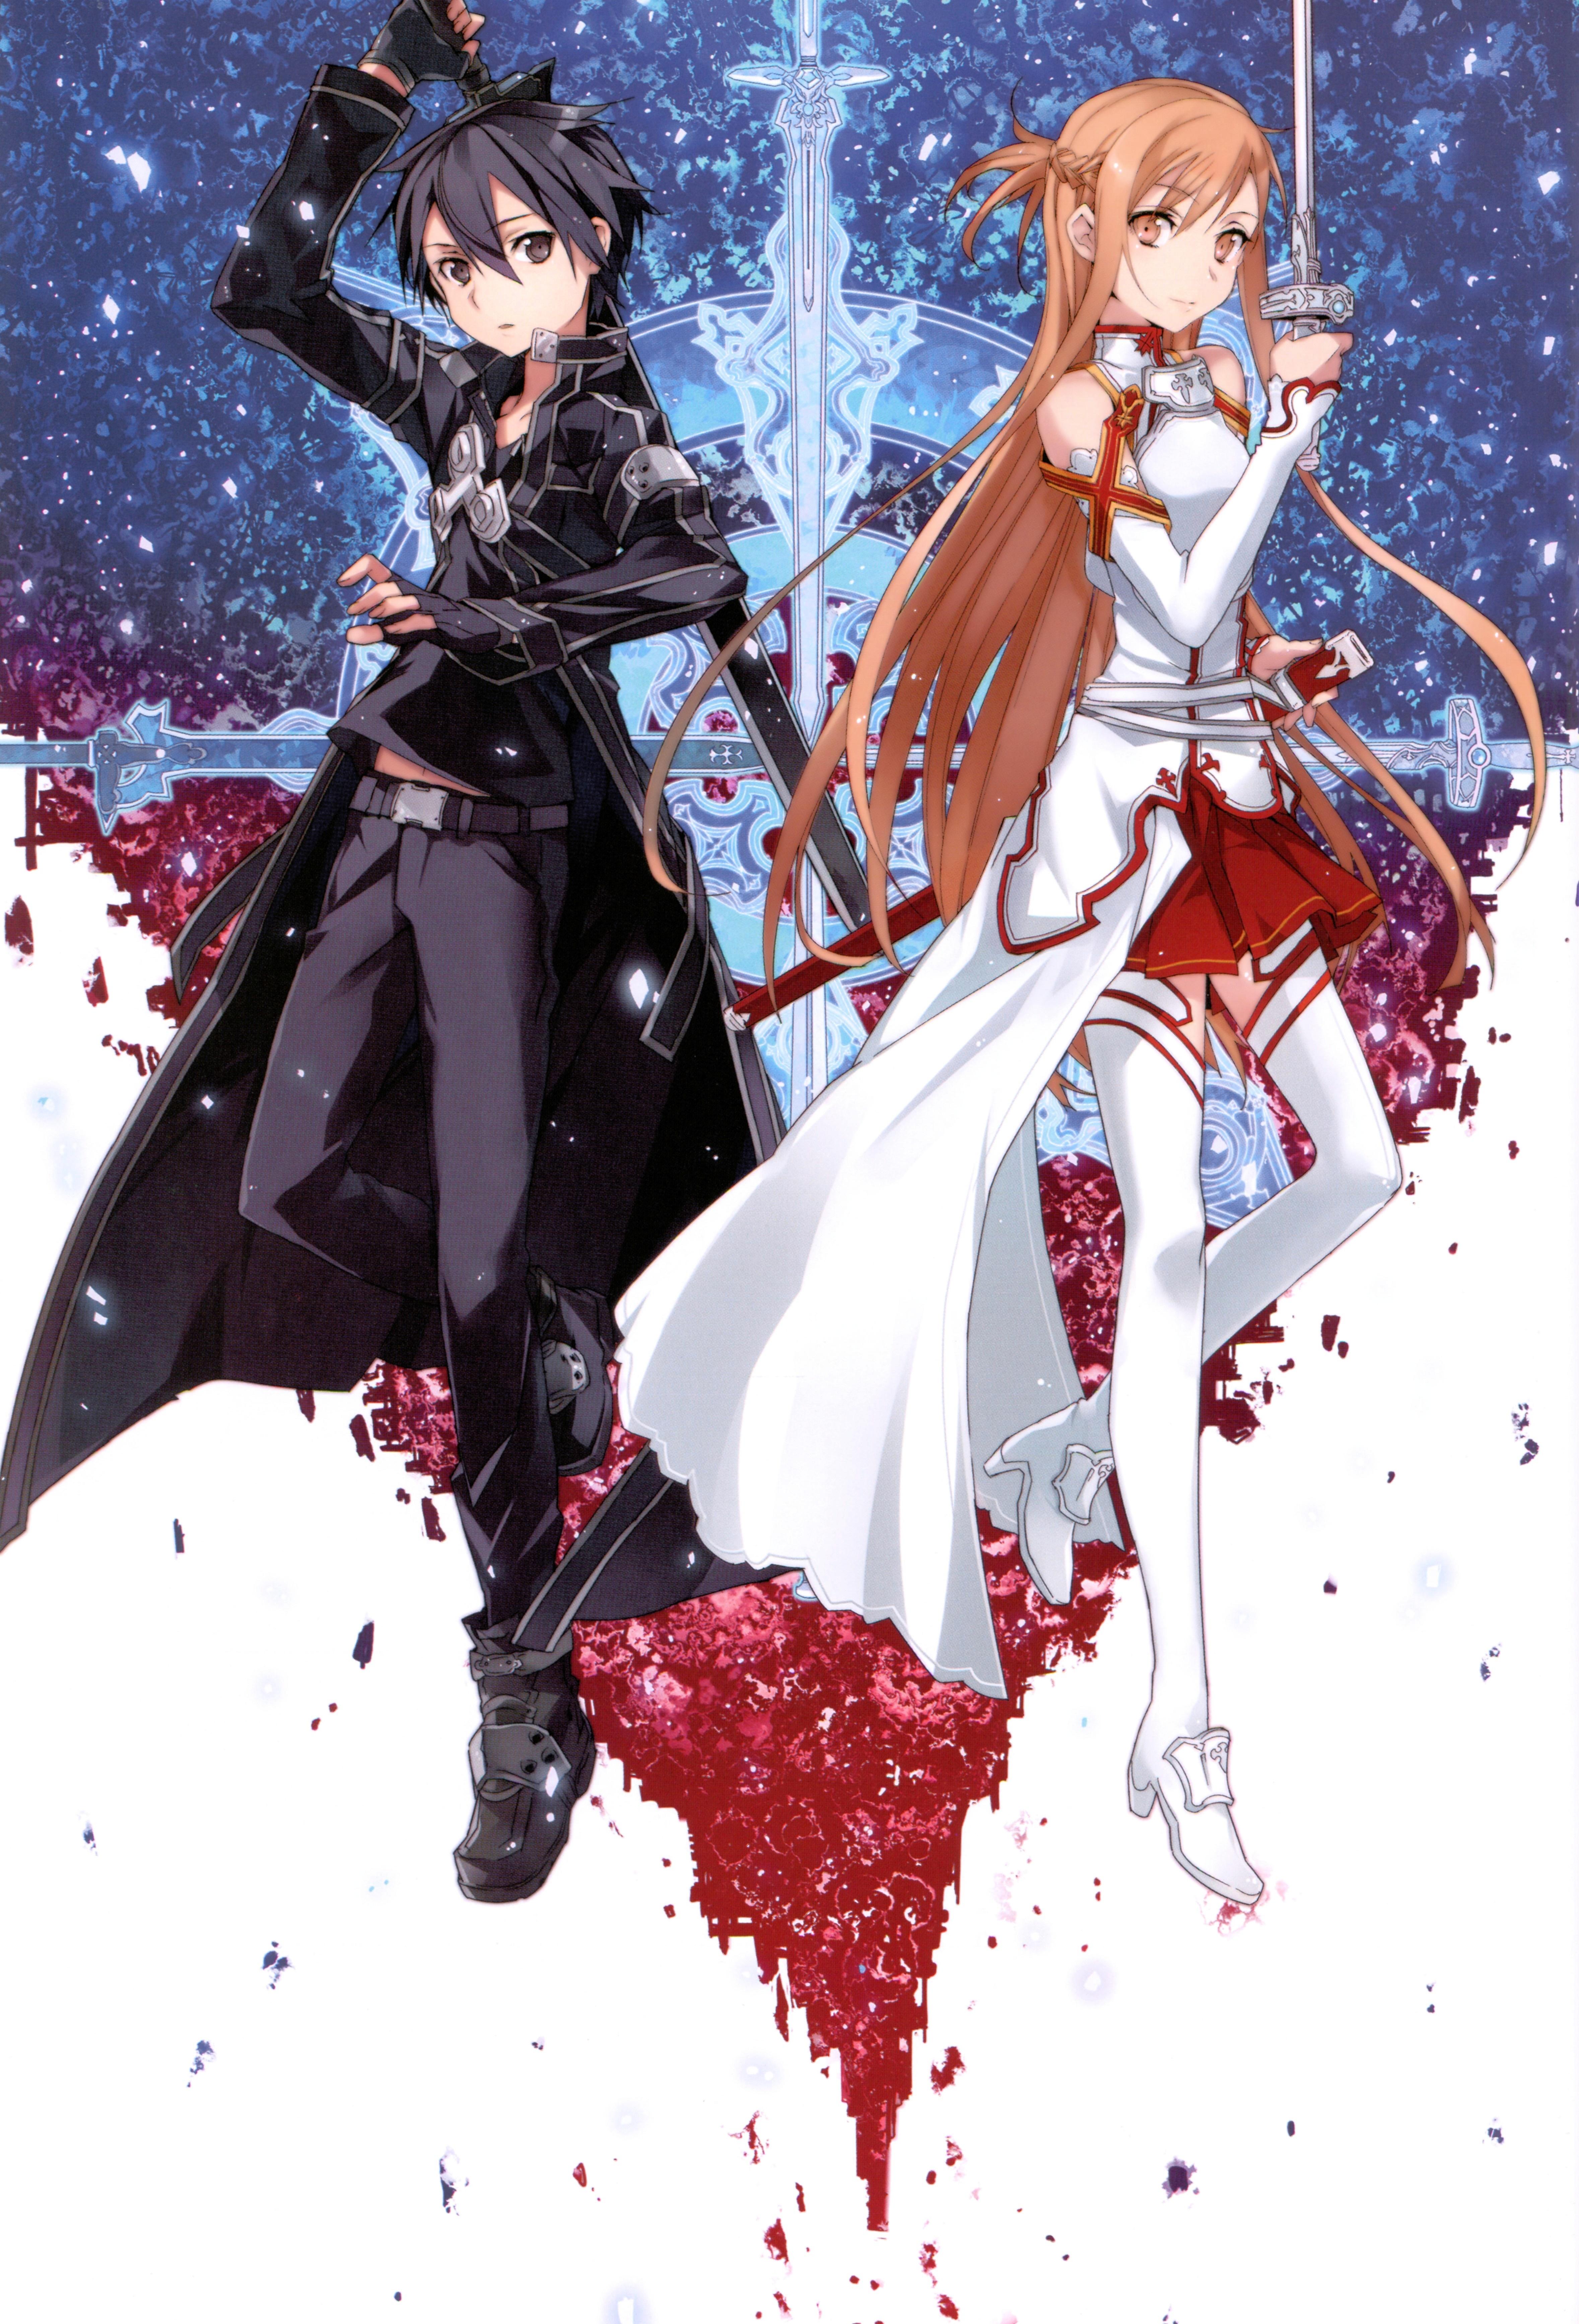 1280x2120 Resolution Sword Art Online 4k Asuna Yuuki and Kirito iPhone 6  plus Wallpaper  Wallpapers Den